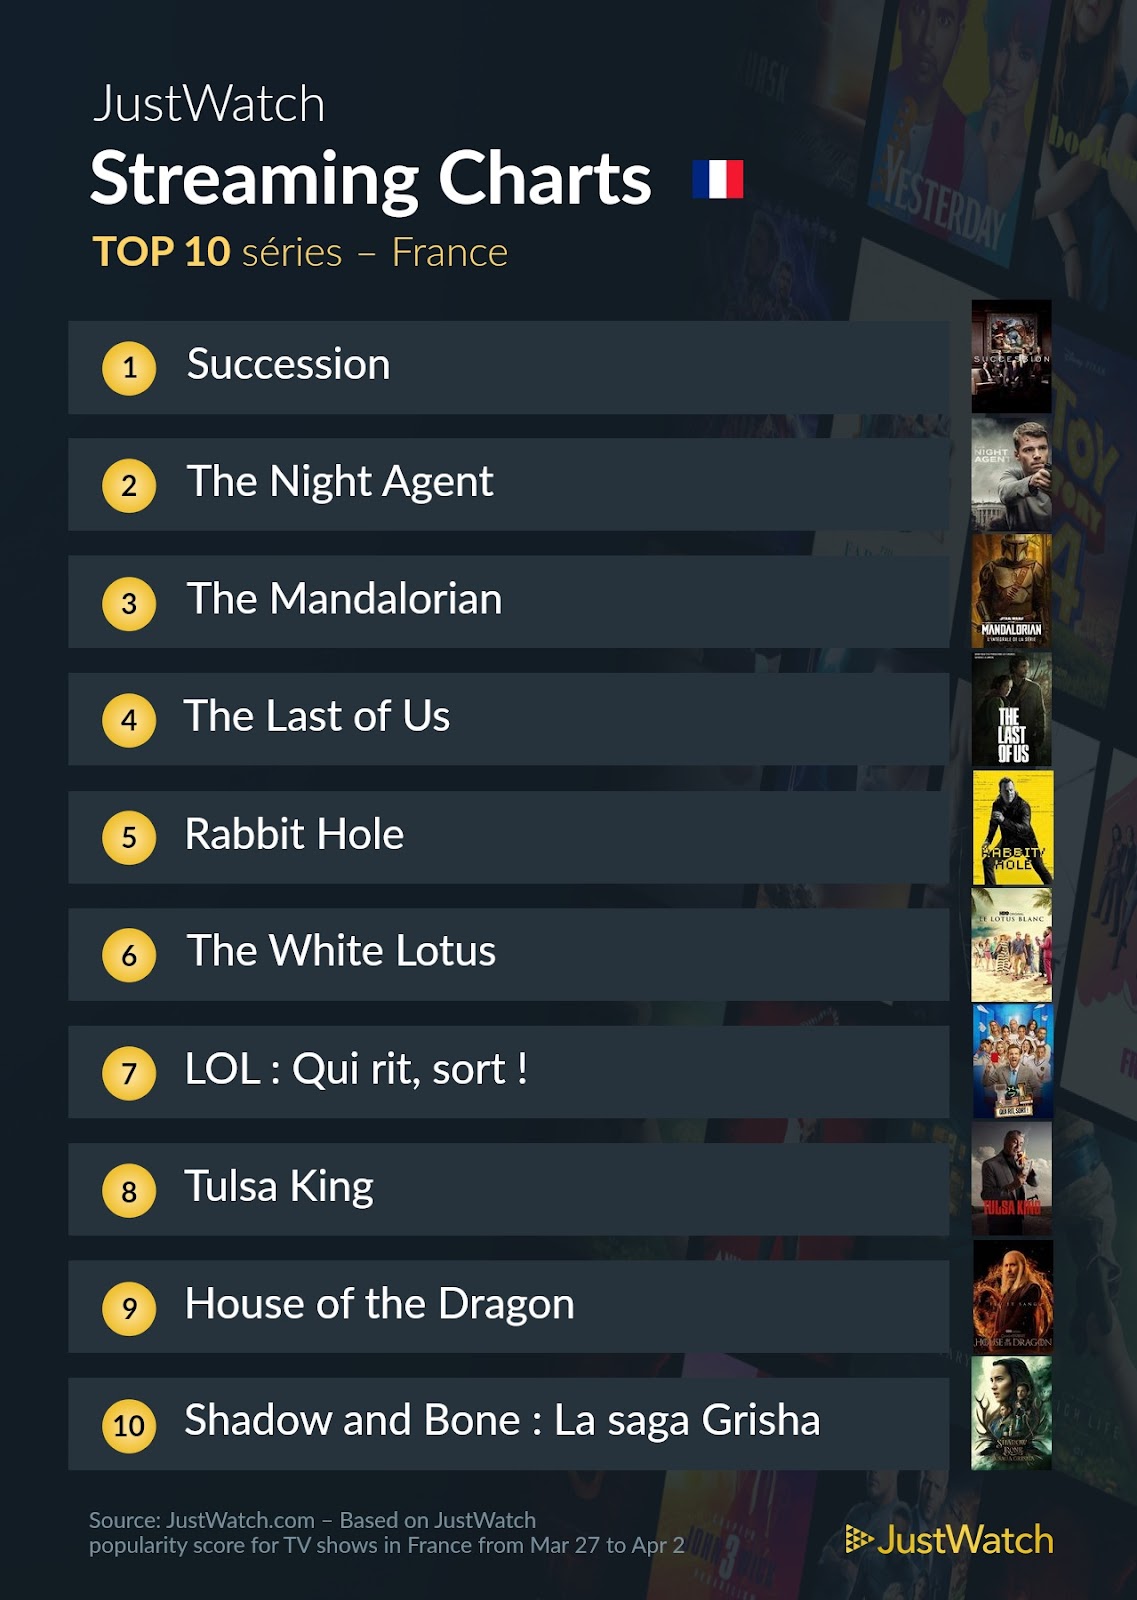 Le top streaming cinéma / séries: "John Wick" et "Succession" au top cette semaine !